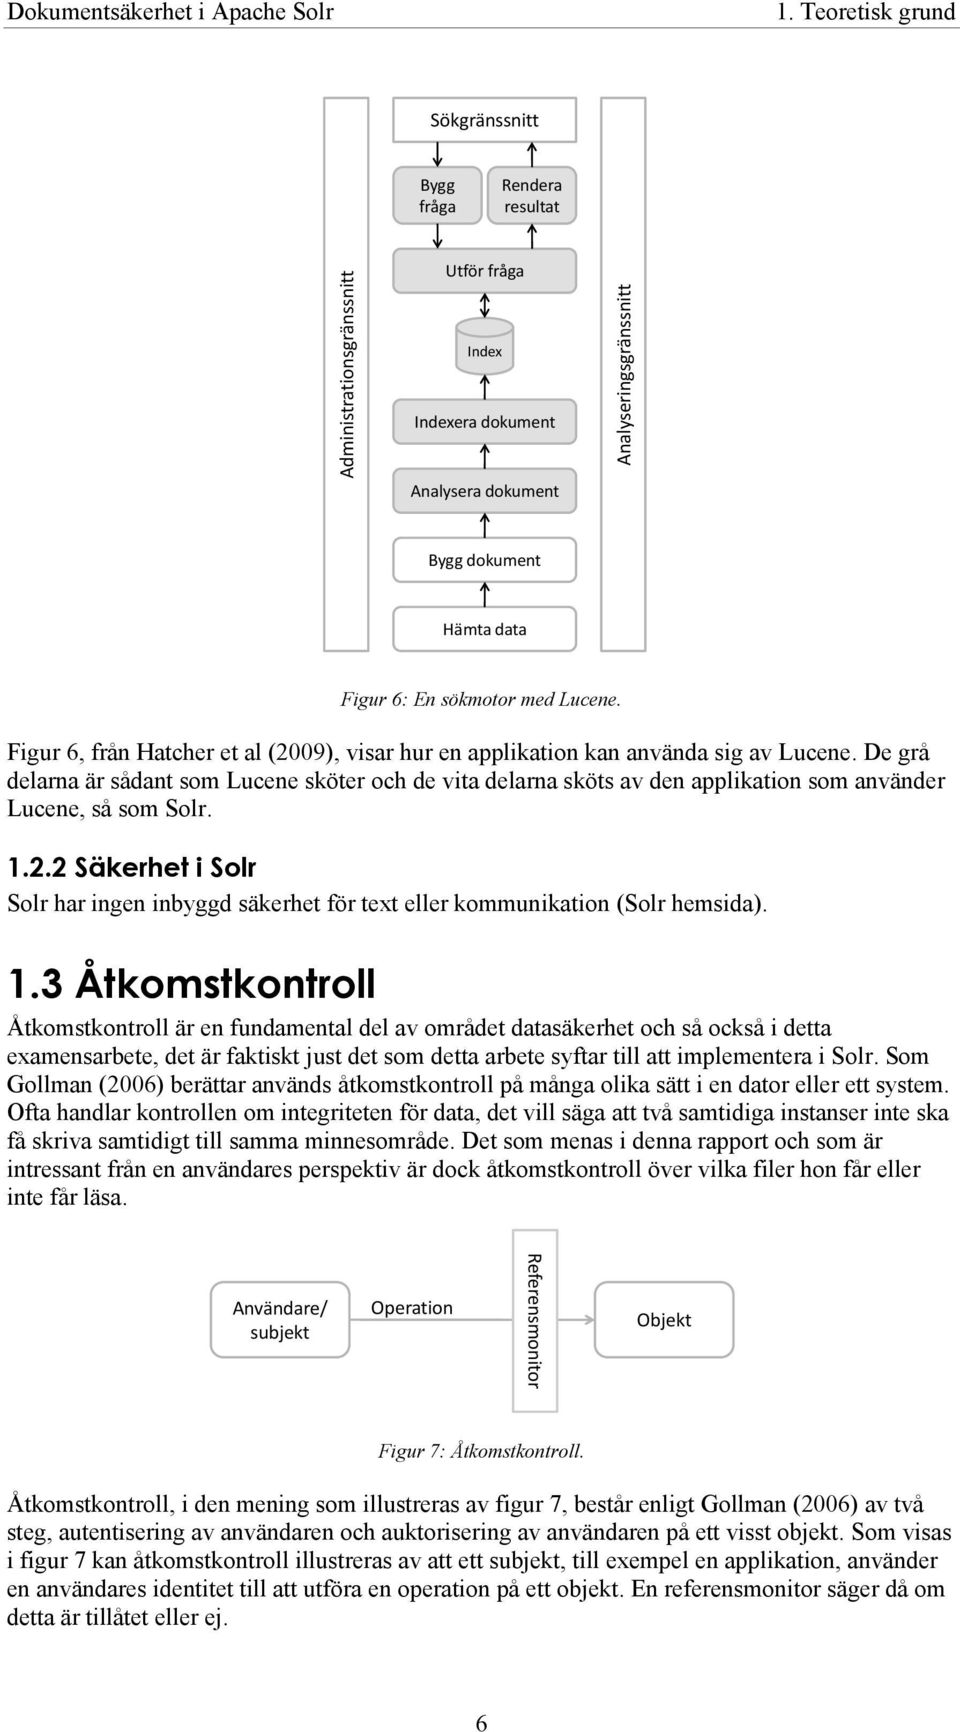 Figur 6, från Hatcher et al (2009), visar hur en applikation kan använda sig av Lucene.